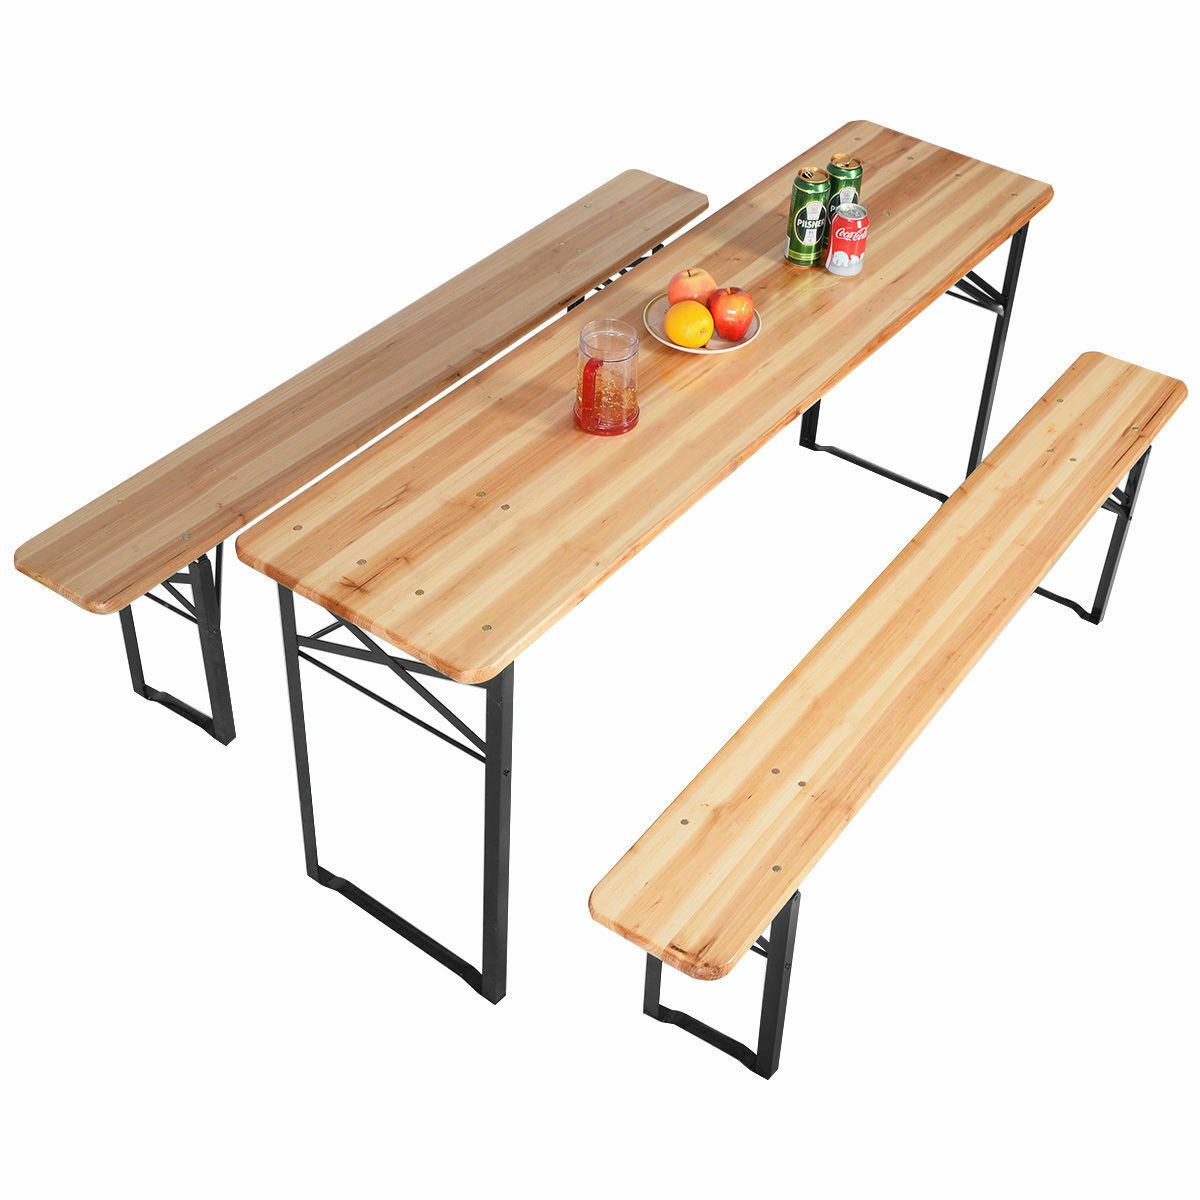 Wooden Portable Patio Garden Picnic Table And Bench Set